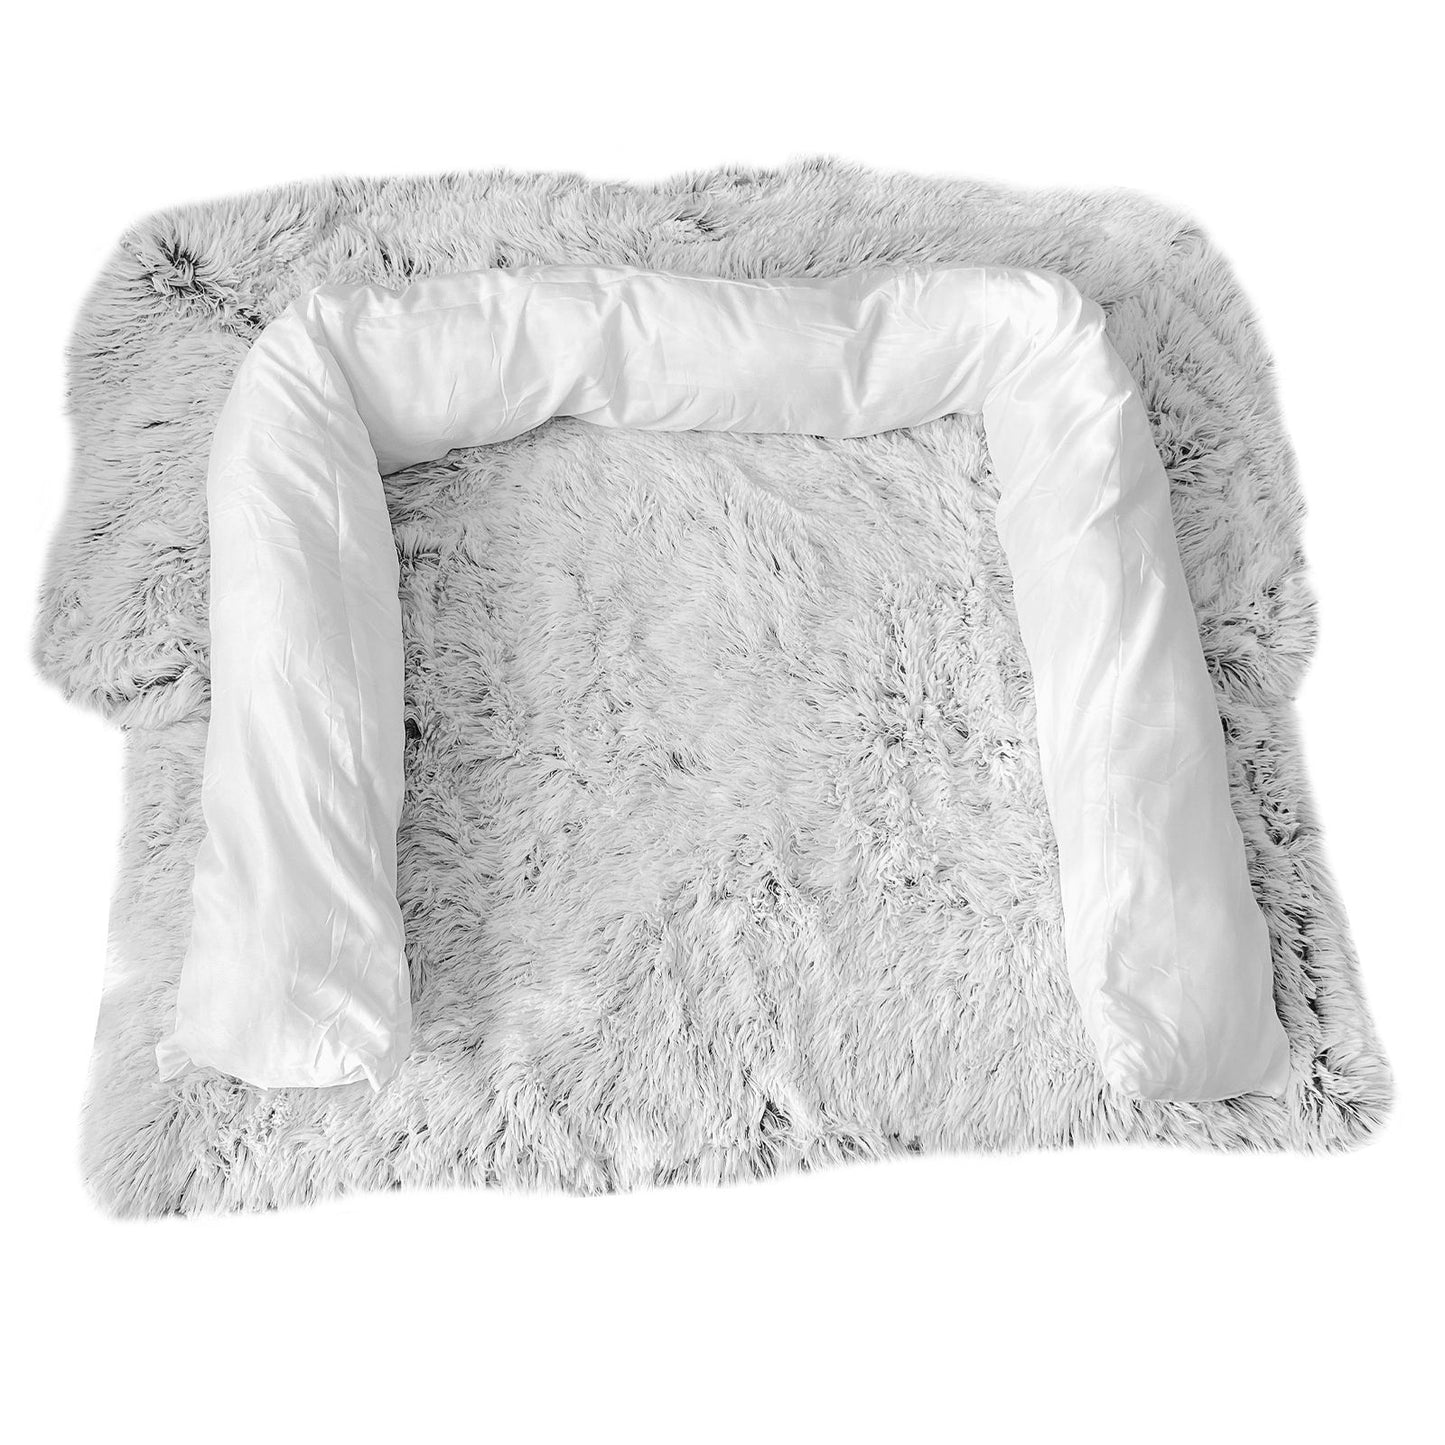 Kids Pet Sofa Bed Dog Cat Calming Waterproof Sofa Cover Protector Slipcovers M